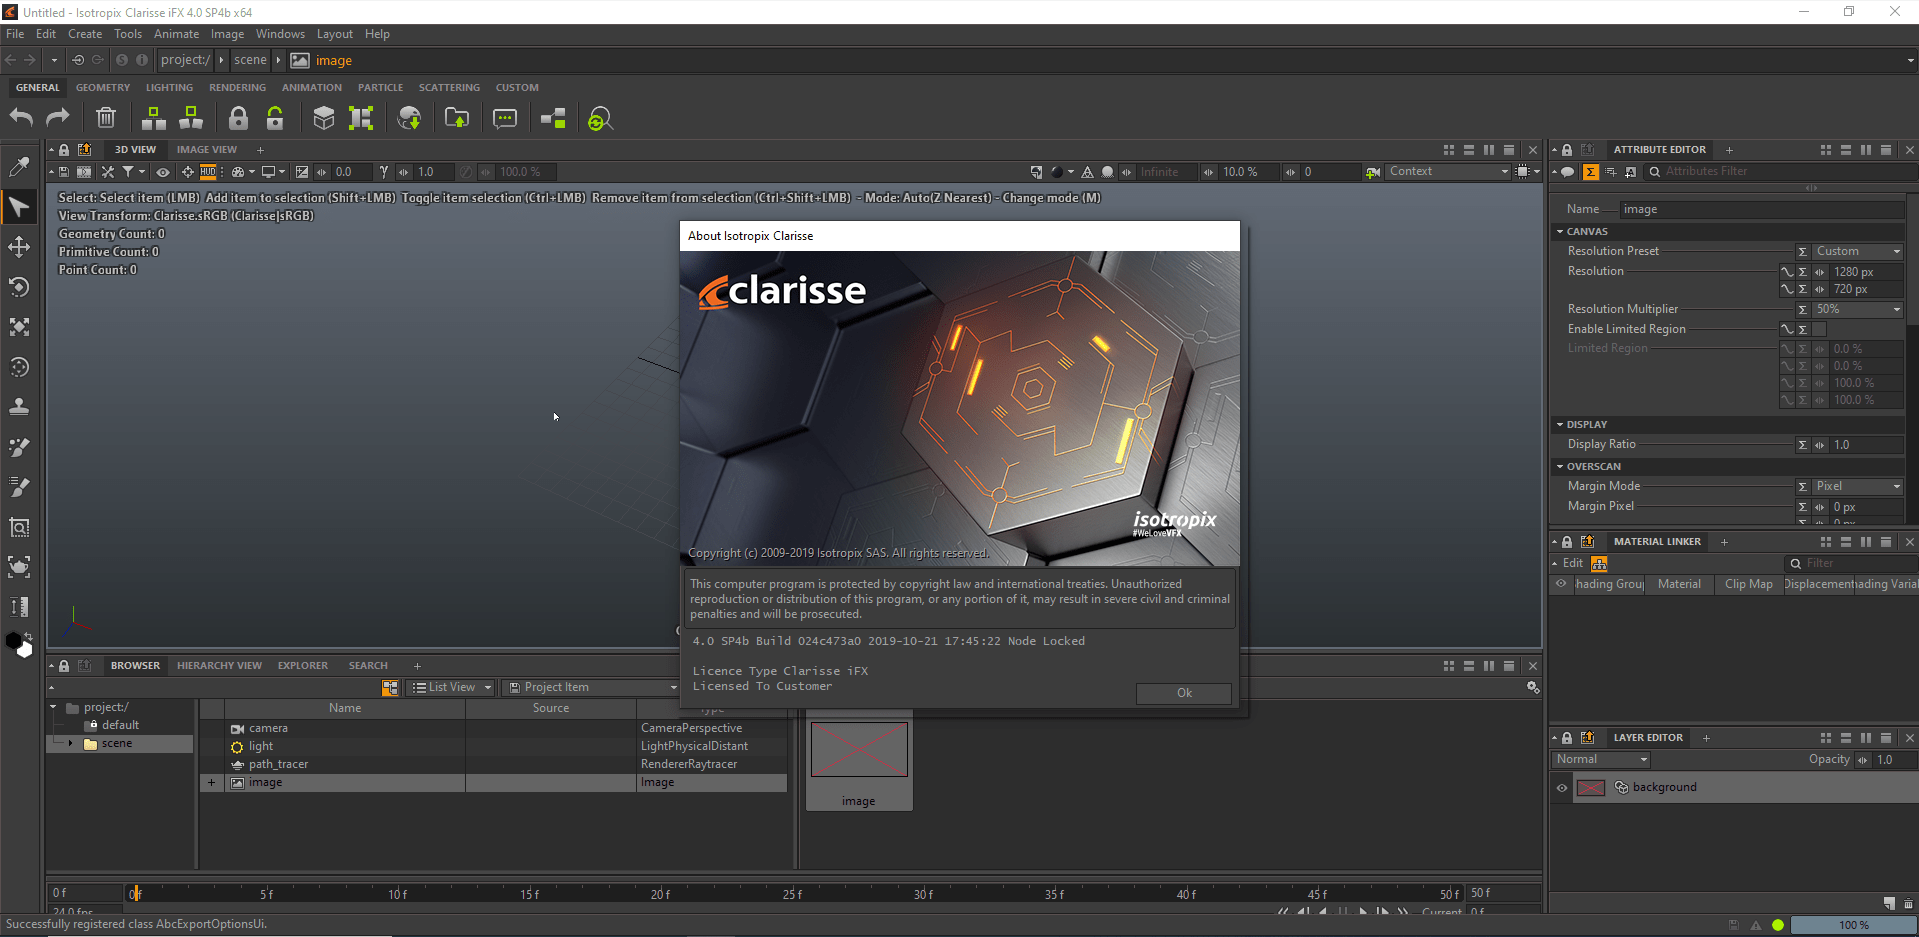 Clarisse iFX 5.0 SP13 instal